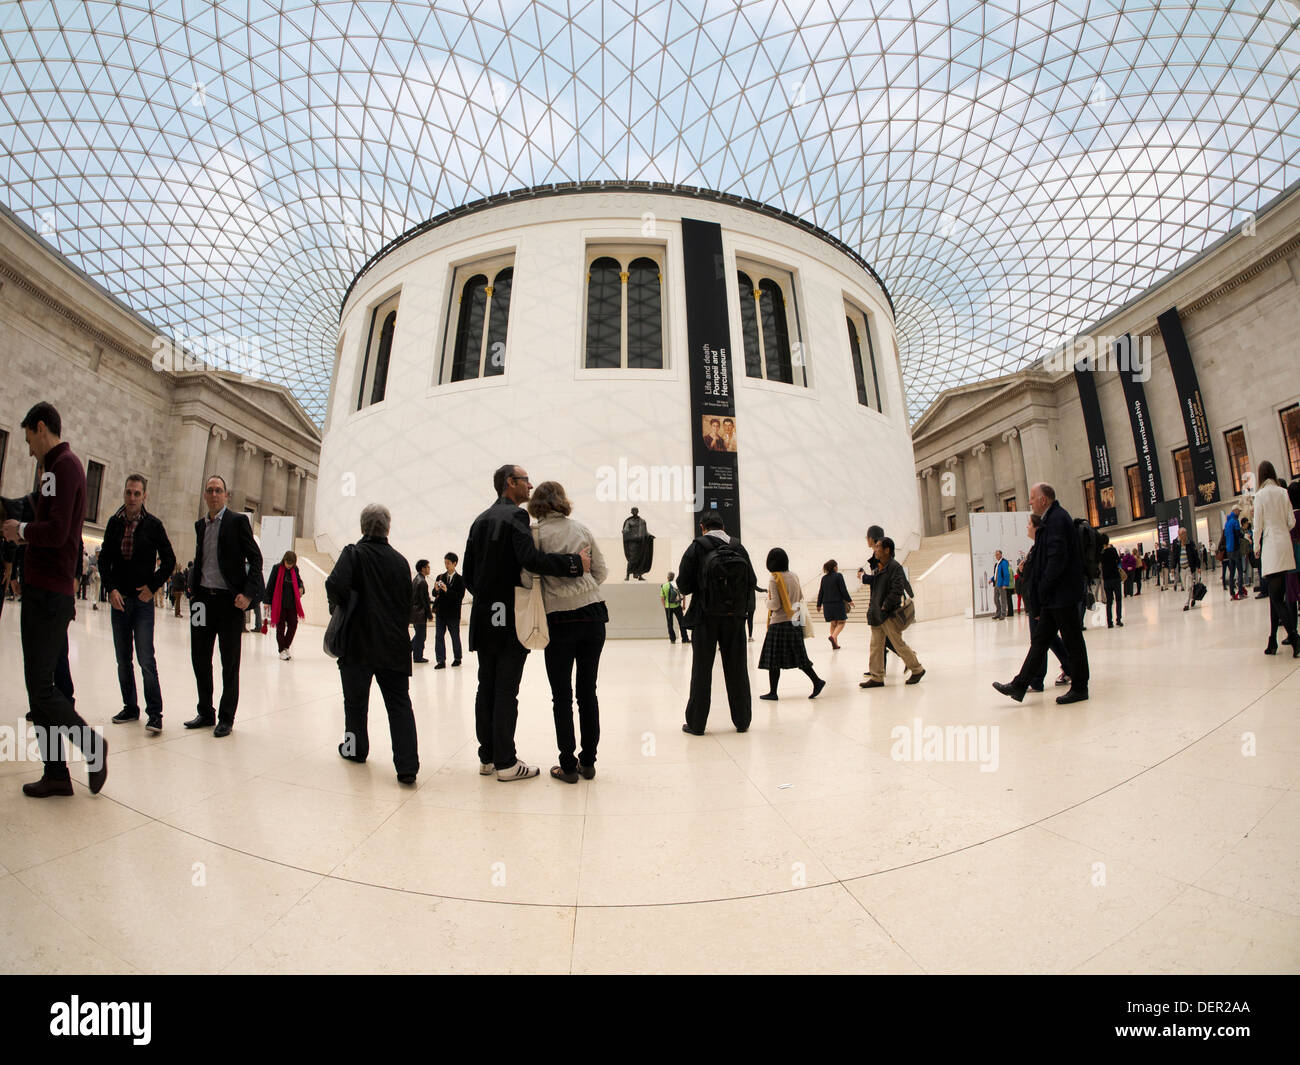 The British Museum - Queen Elizabeth II Great Court 2 Stock Photo